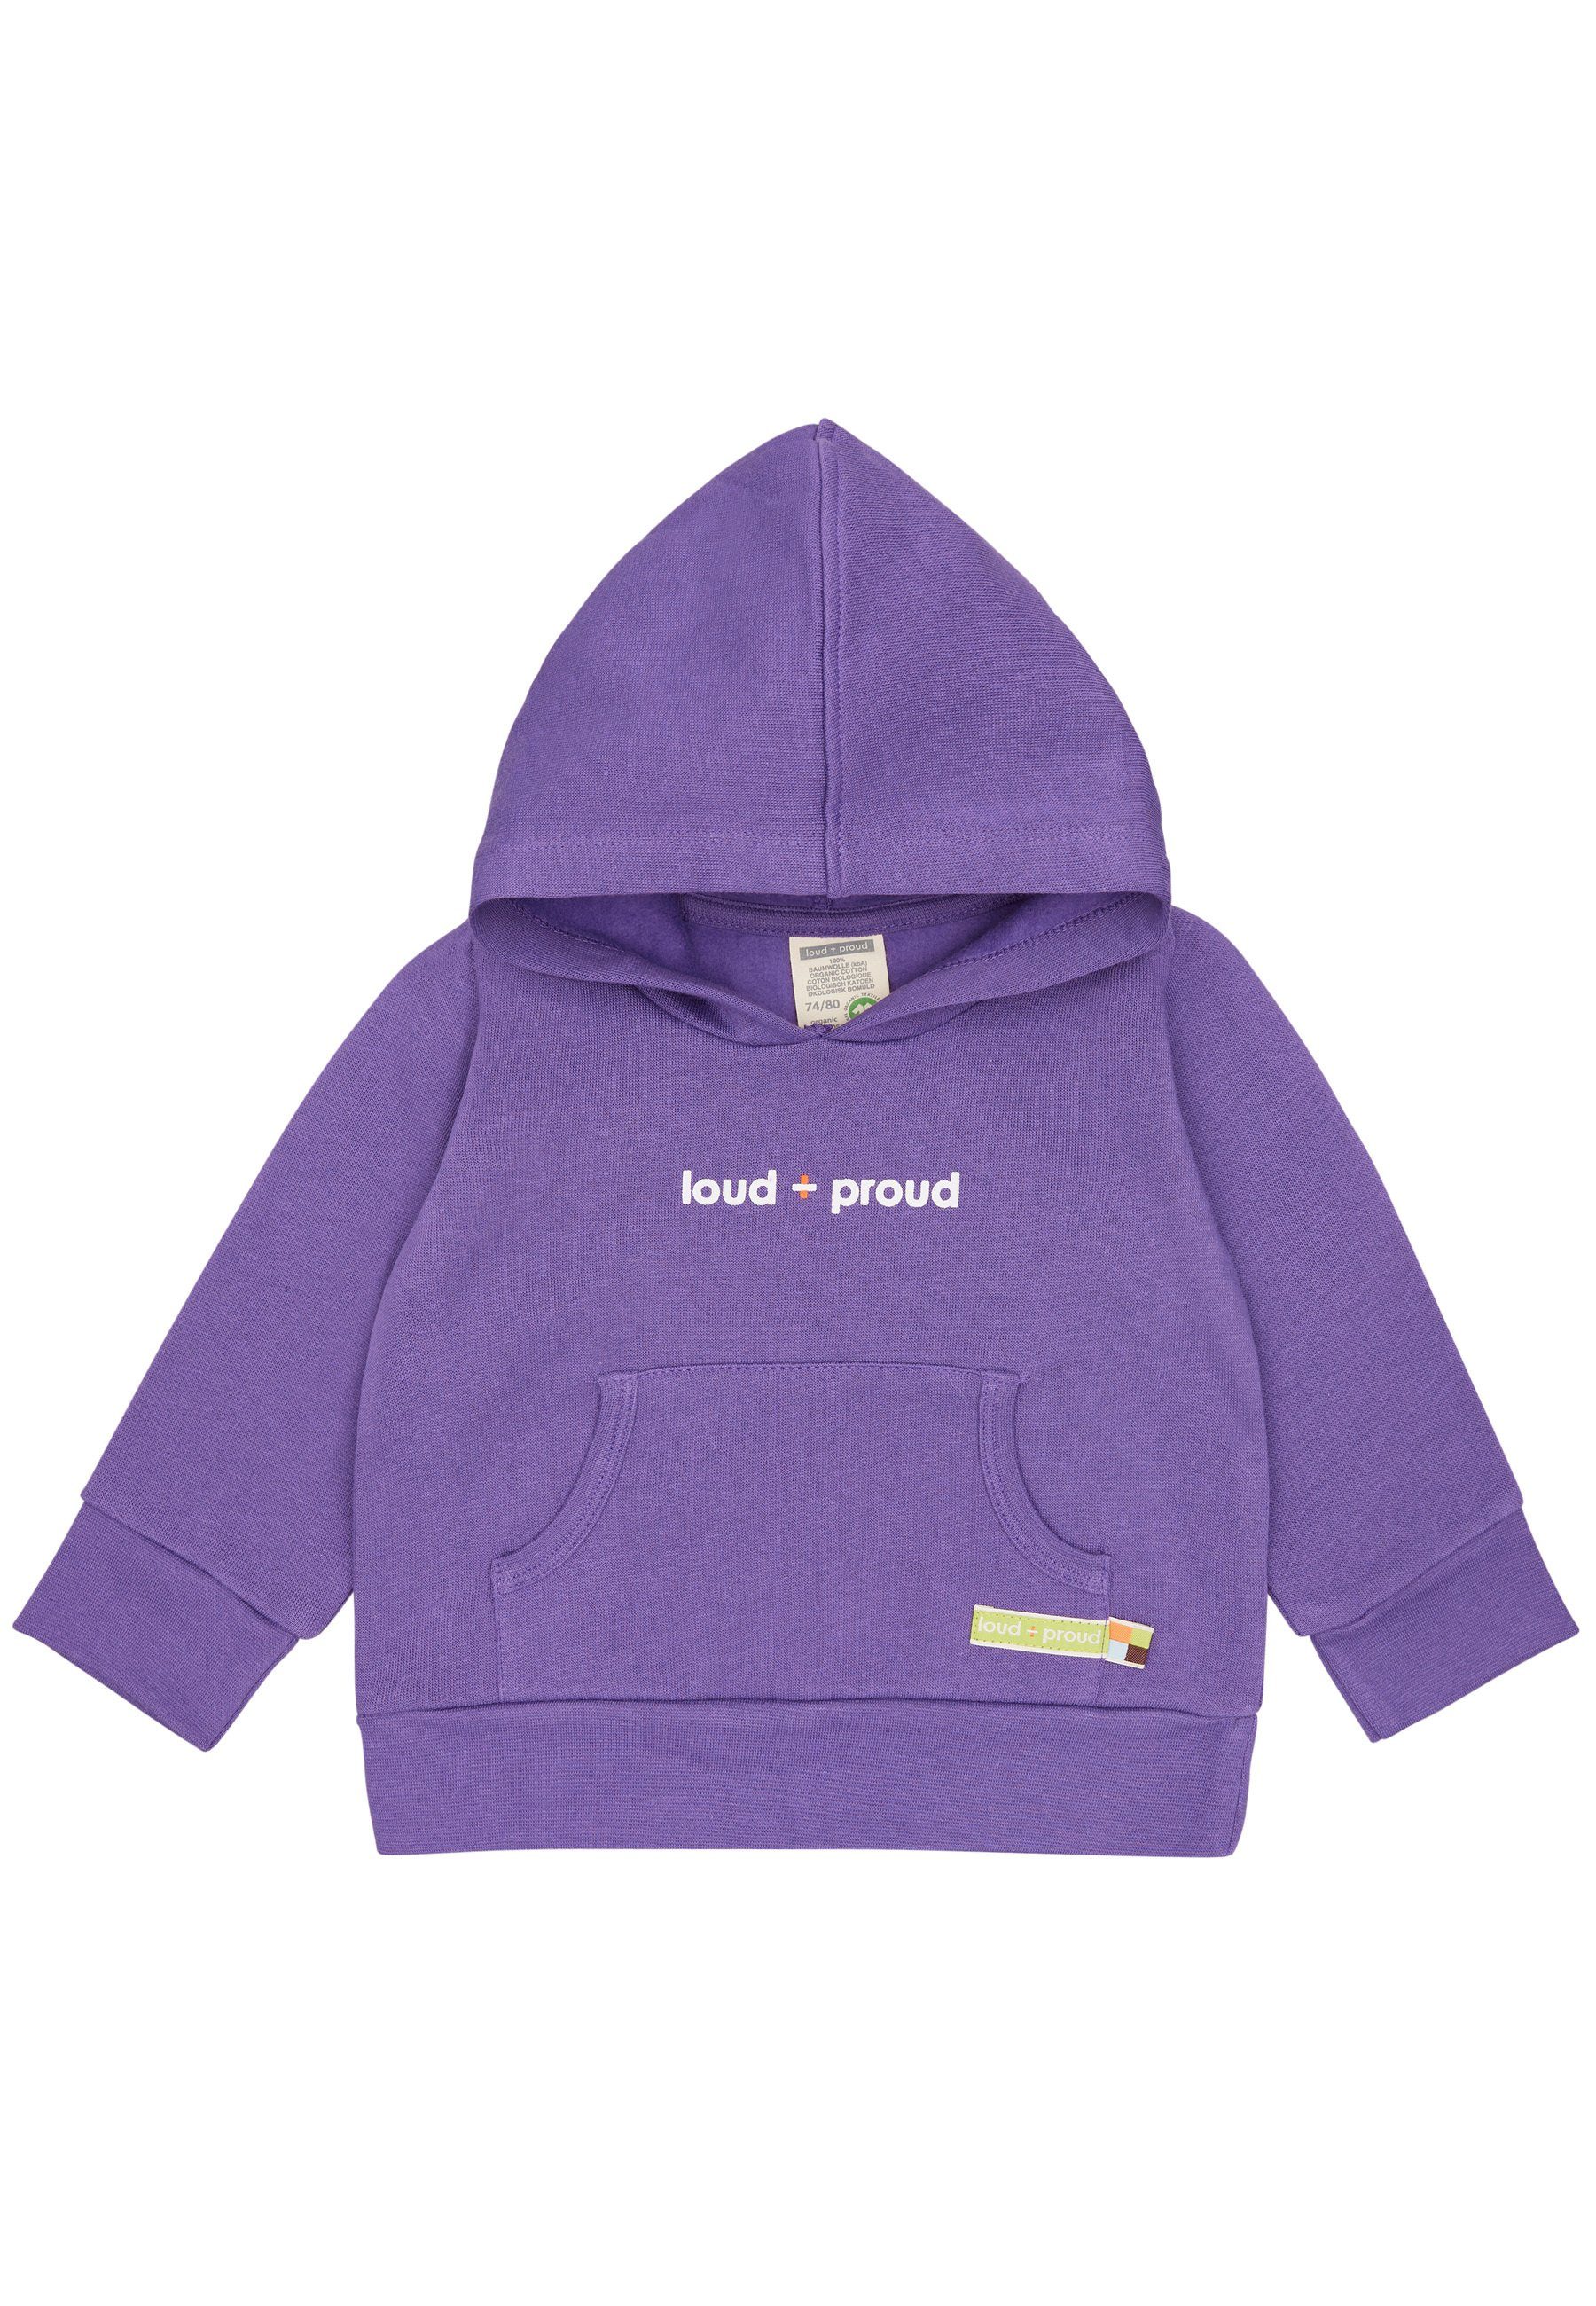 loud + proud Hoodie GOTS zertifizierte Bio-Baumwolle violet